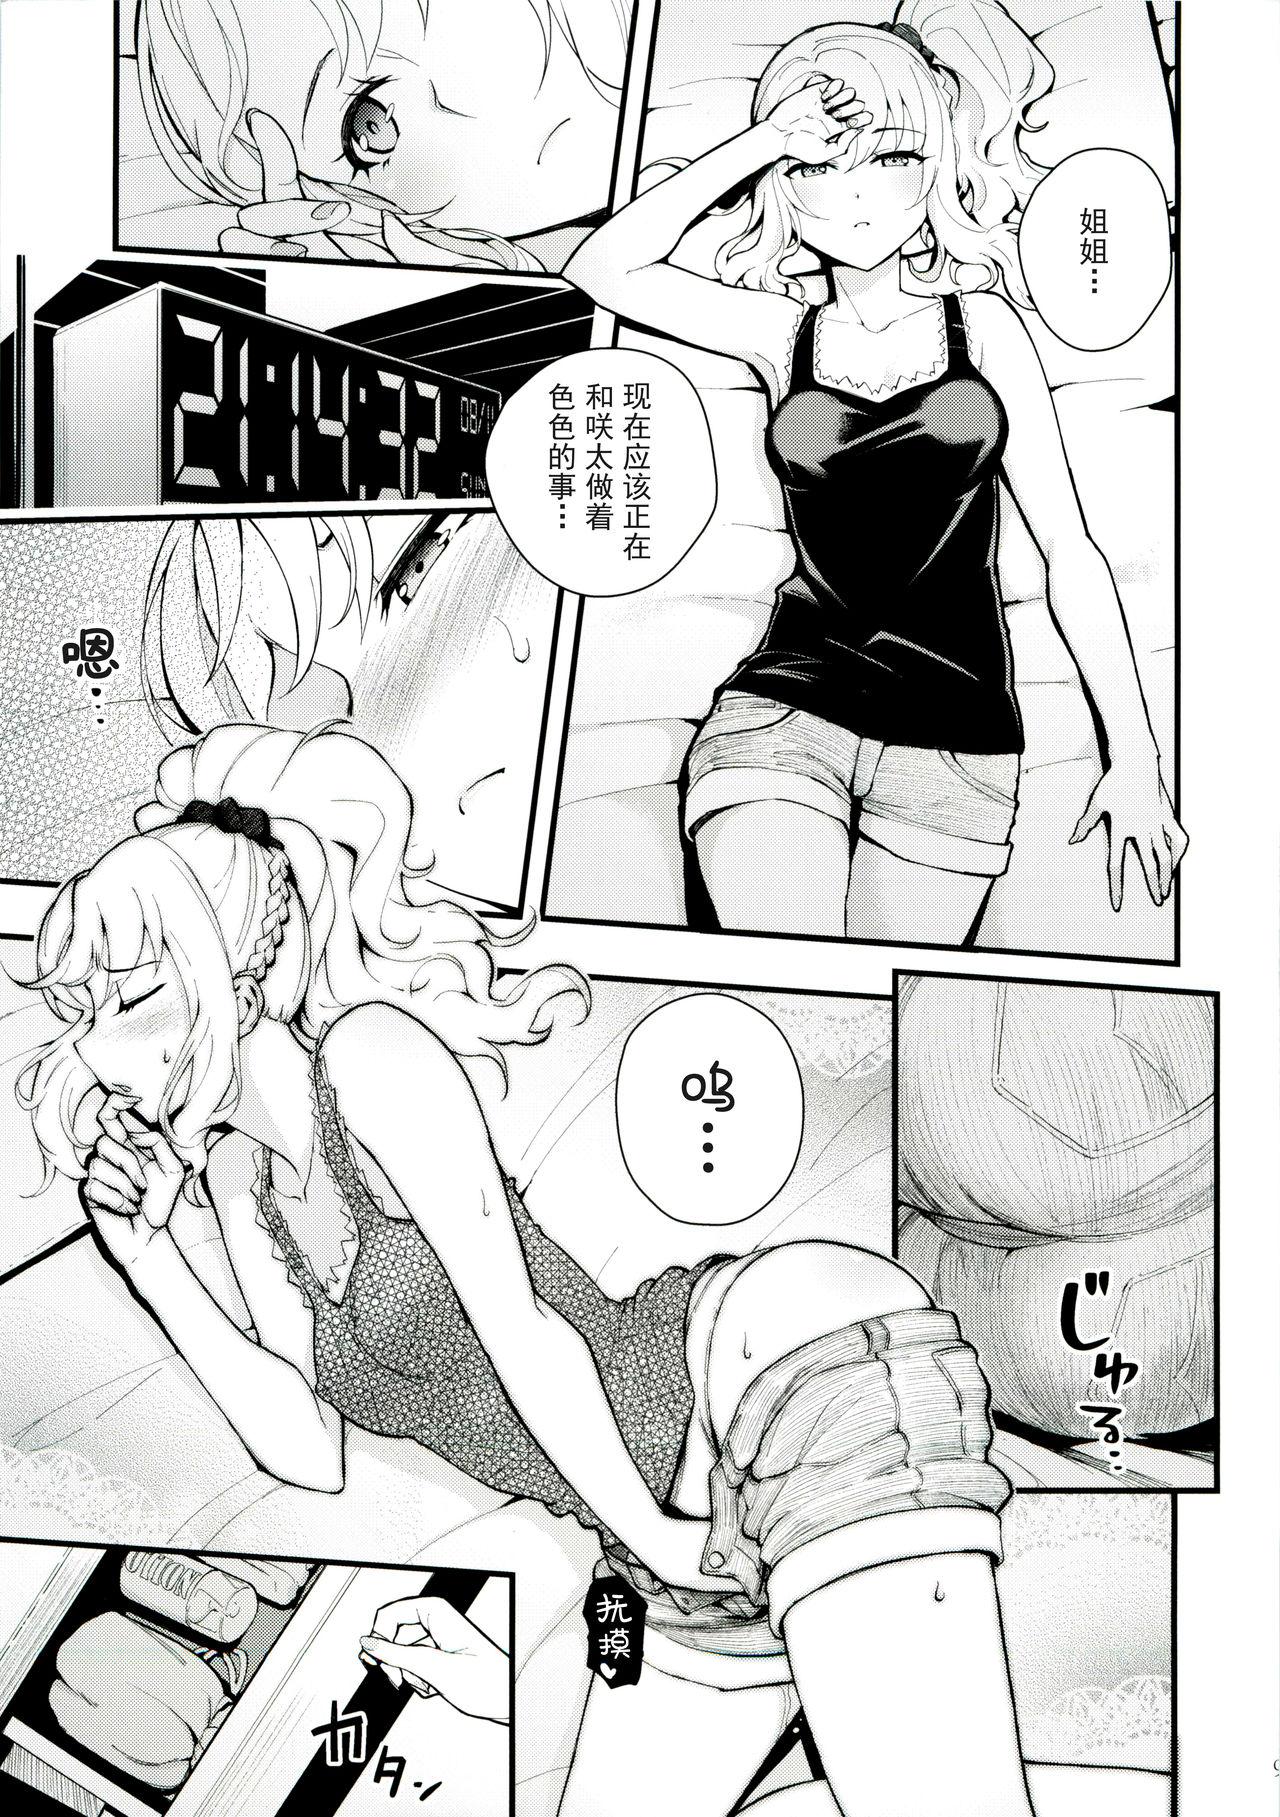 Shecock Sisters Panic - Seishun buta yarou wa bunny girl senpai no yume o minai Hardcore Porno - Page 10